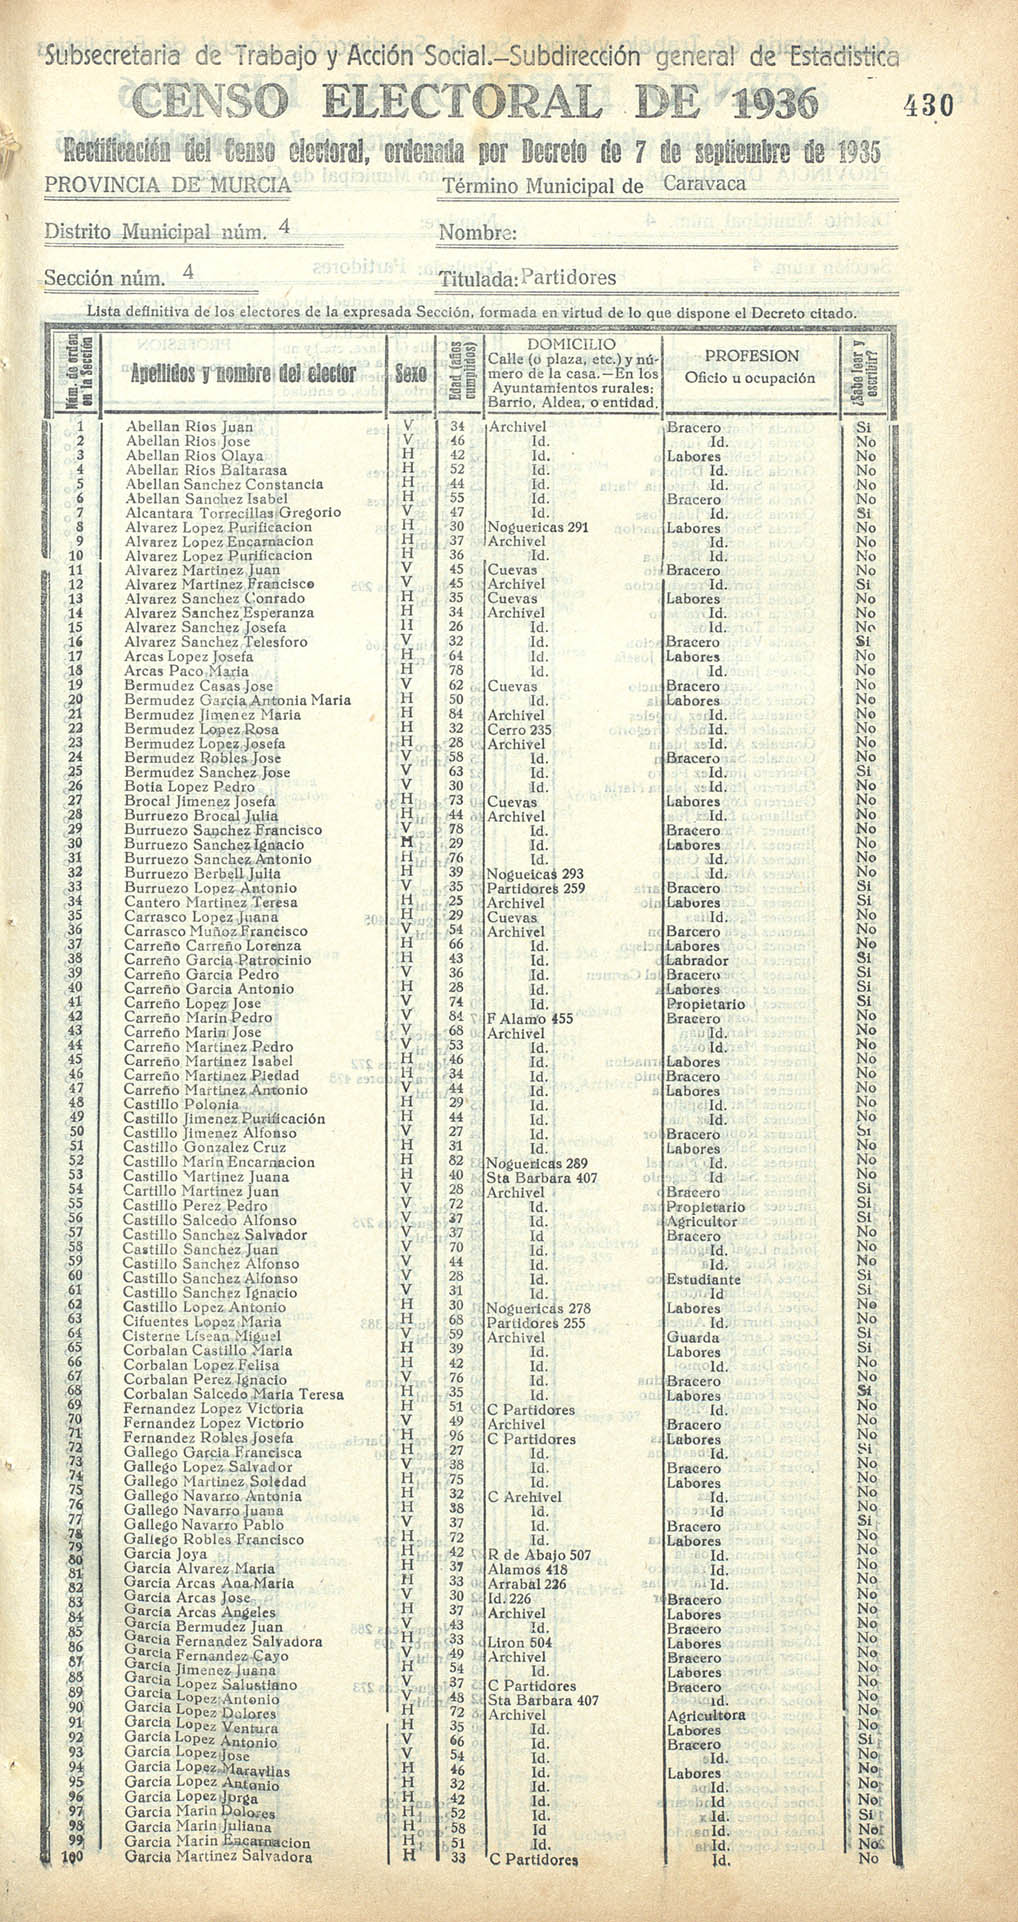 Censo electoral provincial de 1936. Caravaca. Distrito 4º. Sección 4ª, Partidores